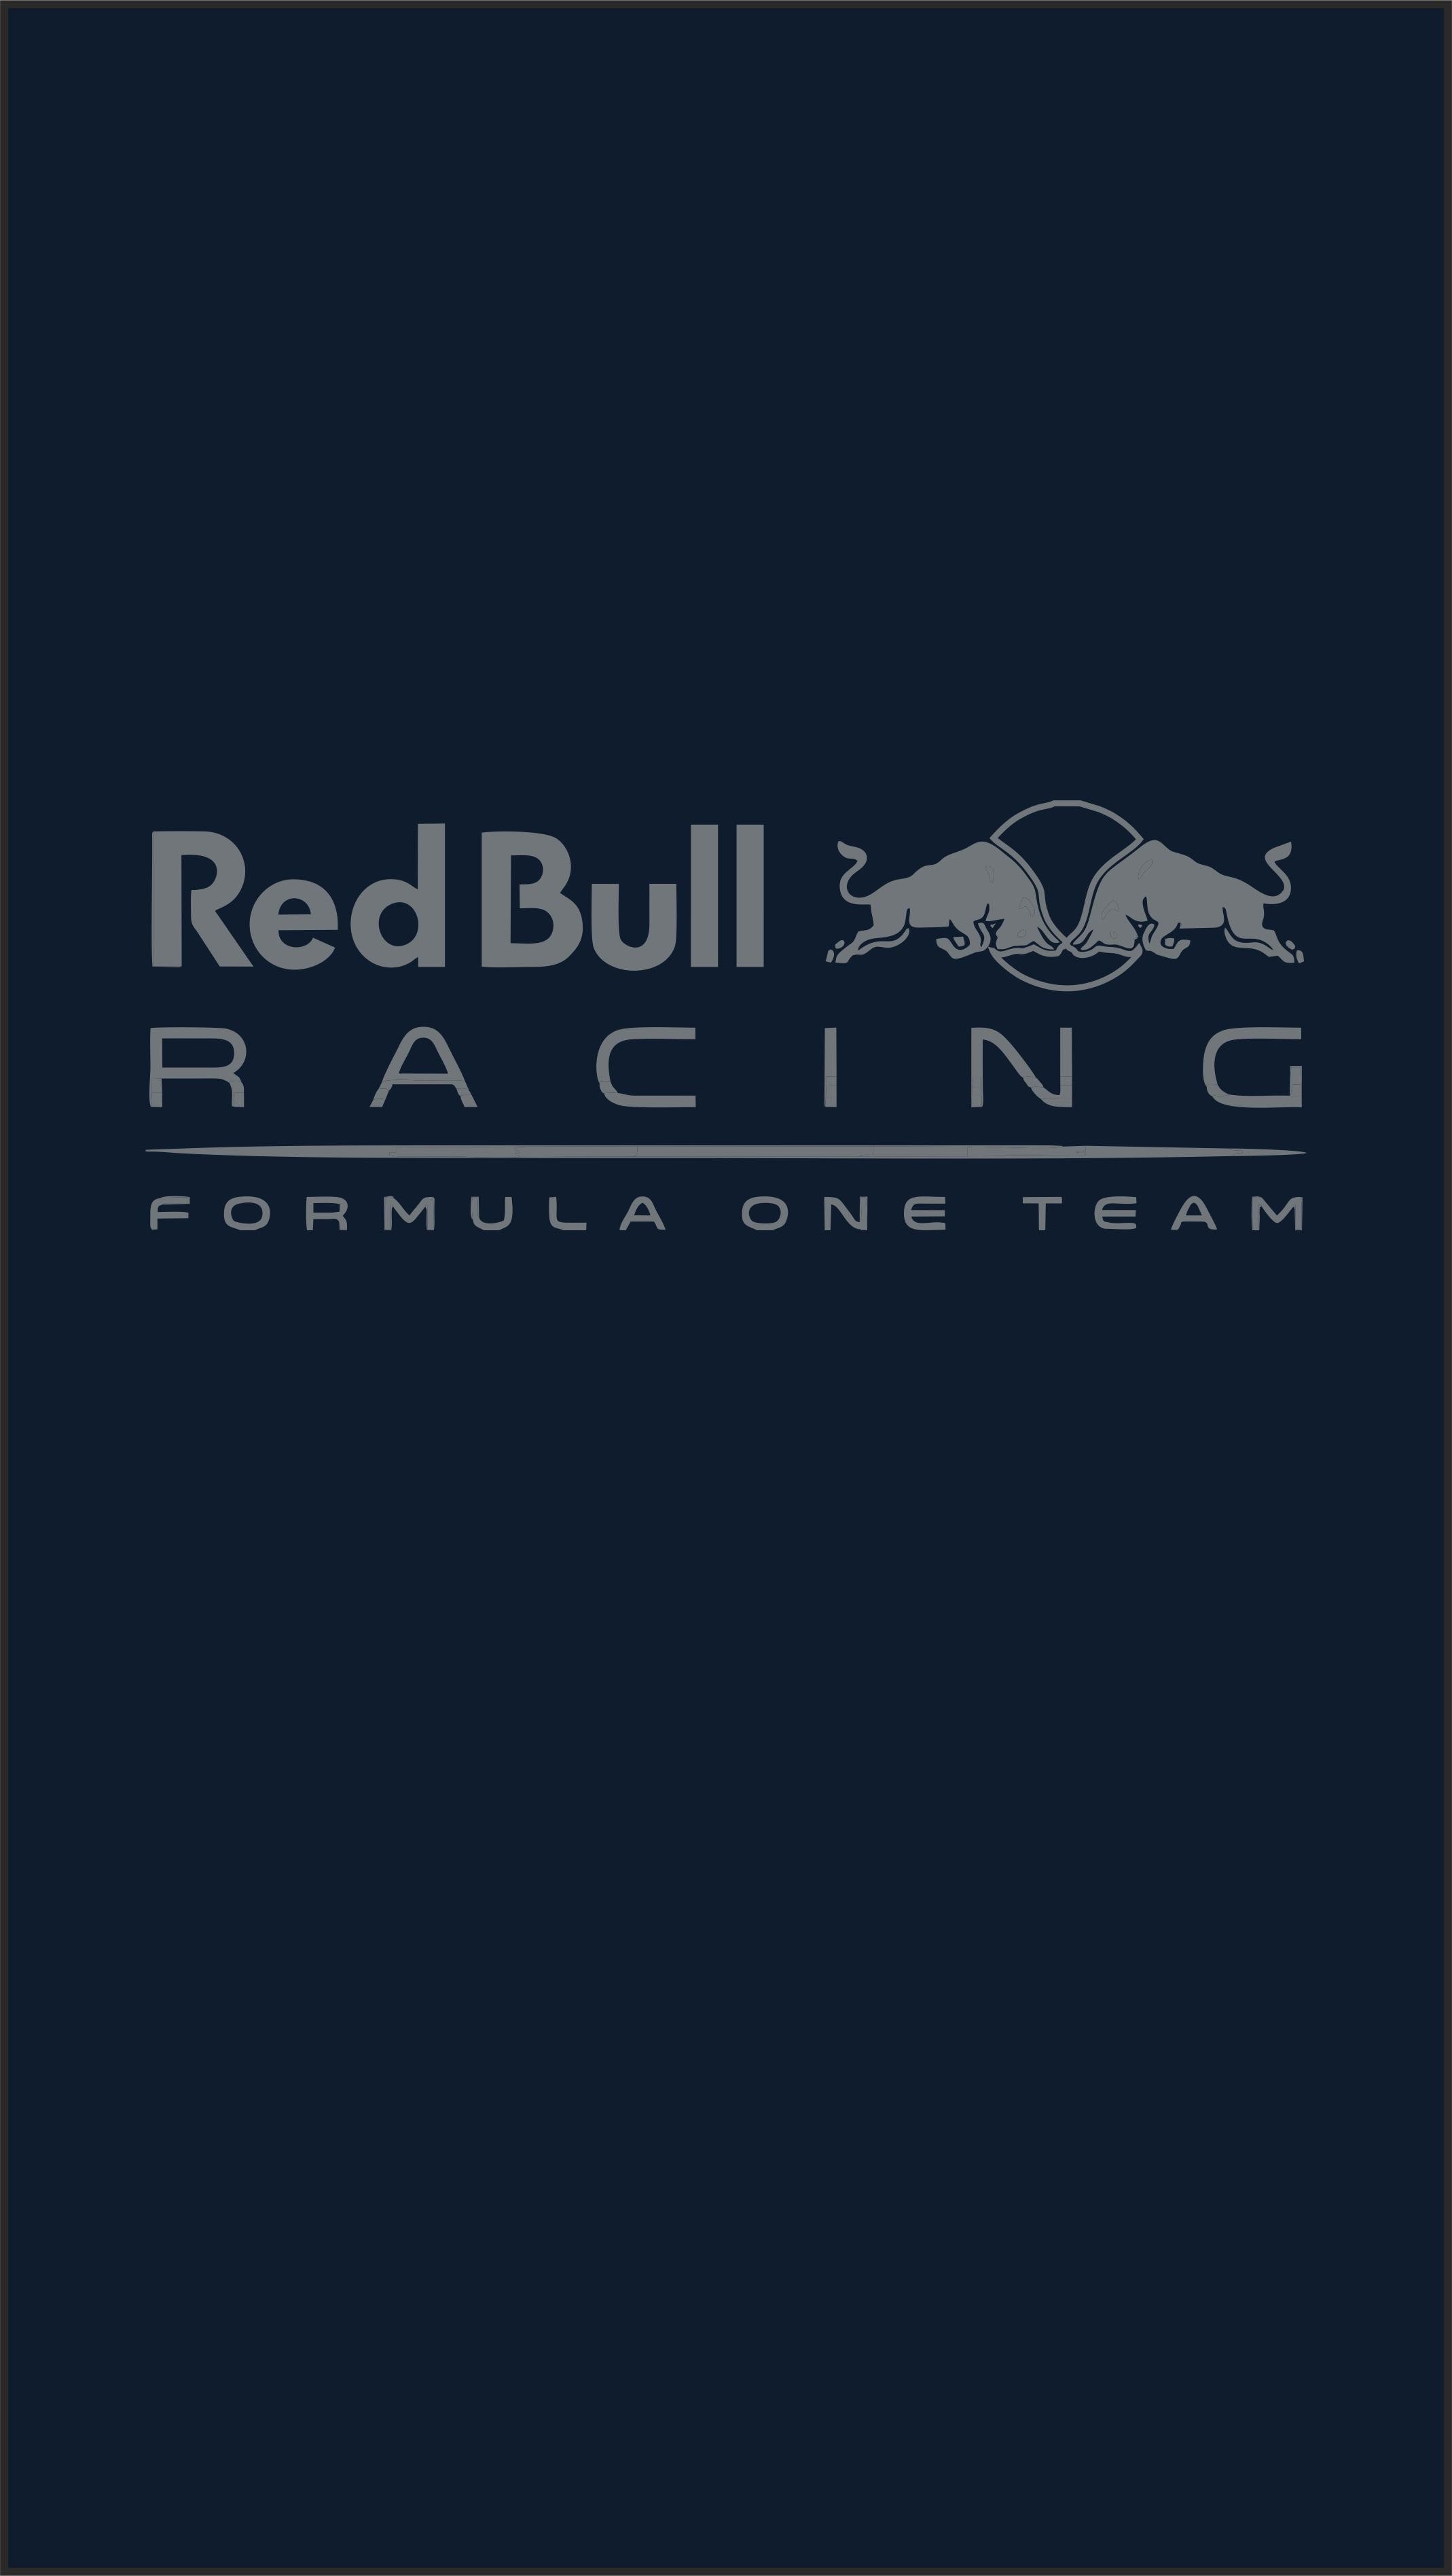 2138x3792 Media(Wallpaper) Red Bull Racing F1 Wallpaper (iPhone) ...